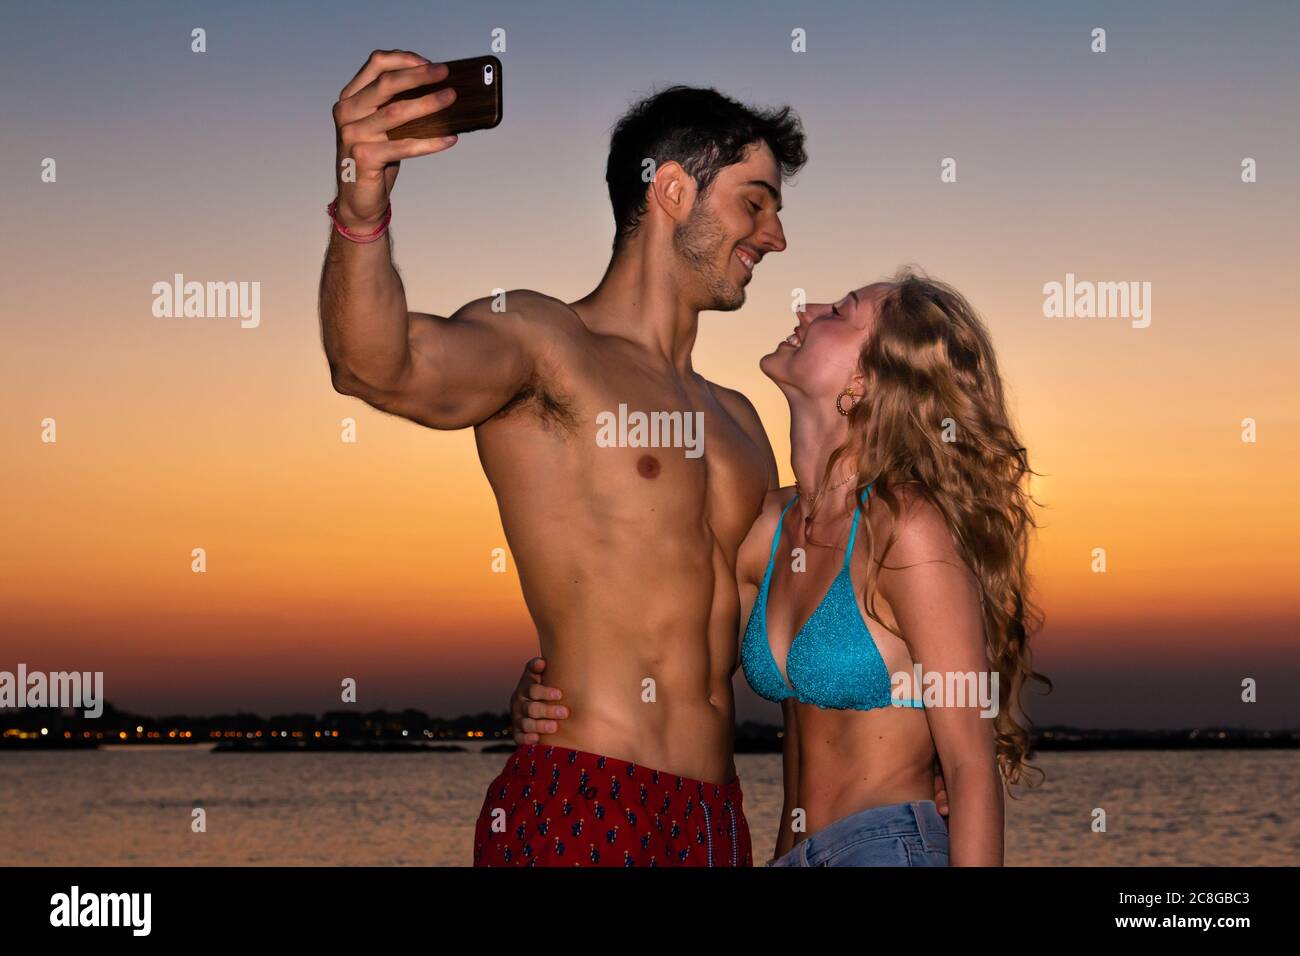 Junges Paar nimmt Selfie im Abendlicht - zwei lächelnde junge Liebhaber machen Selfie am Strand im Sonnenuntergang Stockfoto